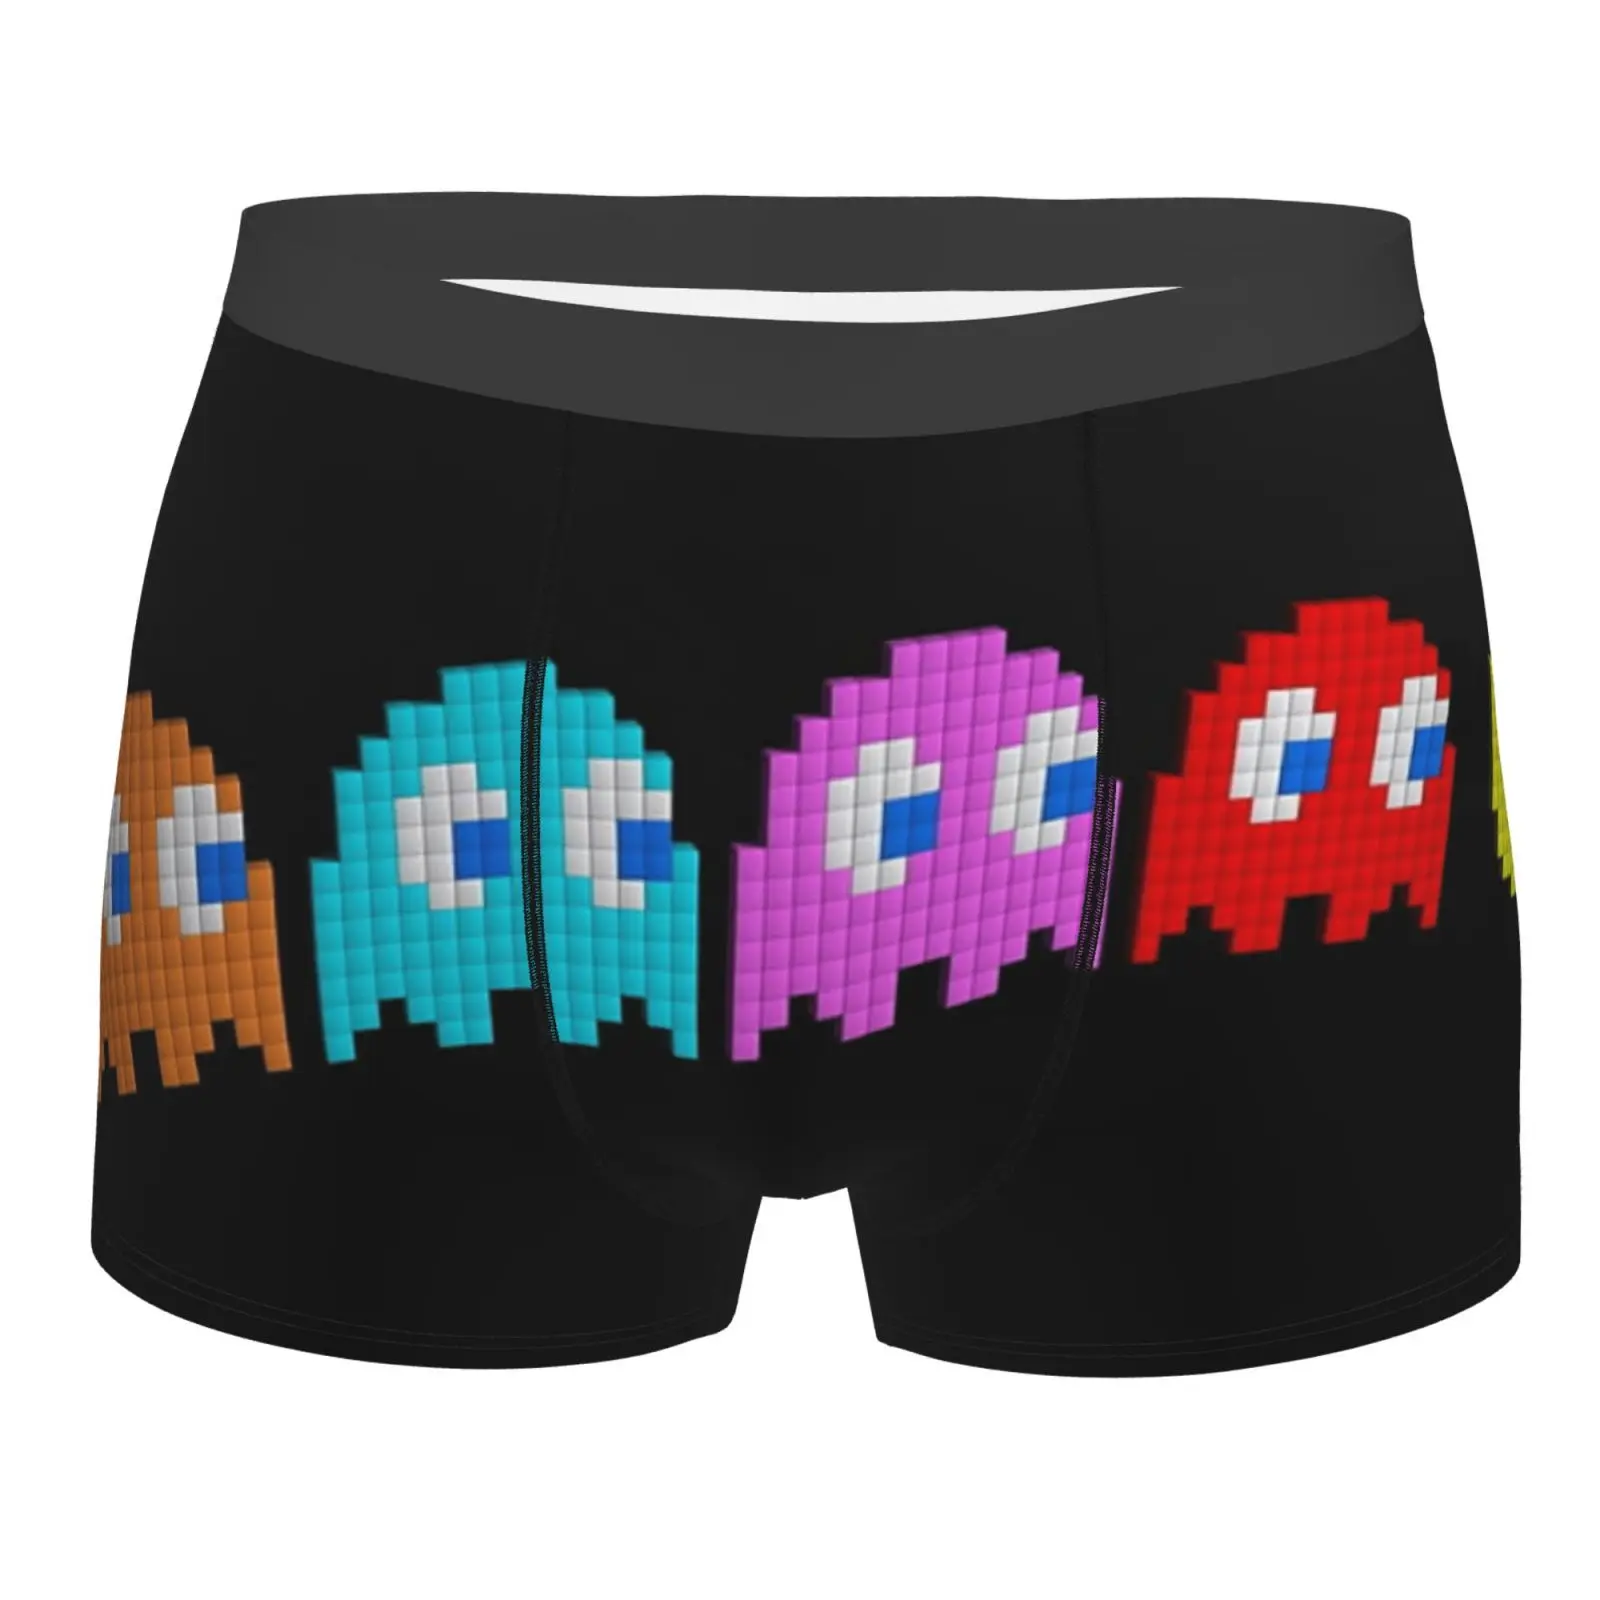 

Мужские шорты-боксеры Pacman Game, черные спортивные шорты из полиэстера, комплект мужского нижнего белья, длинные шорты с шариковым мешочком дл...